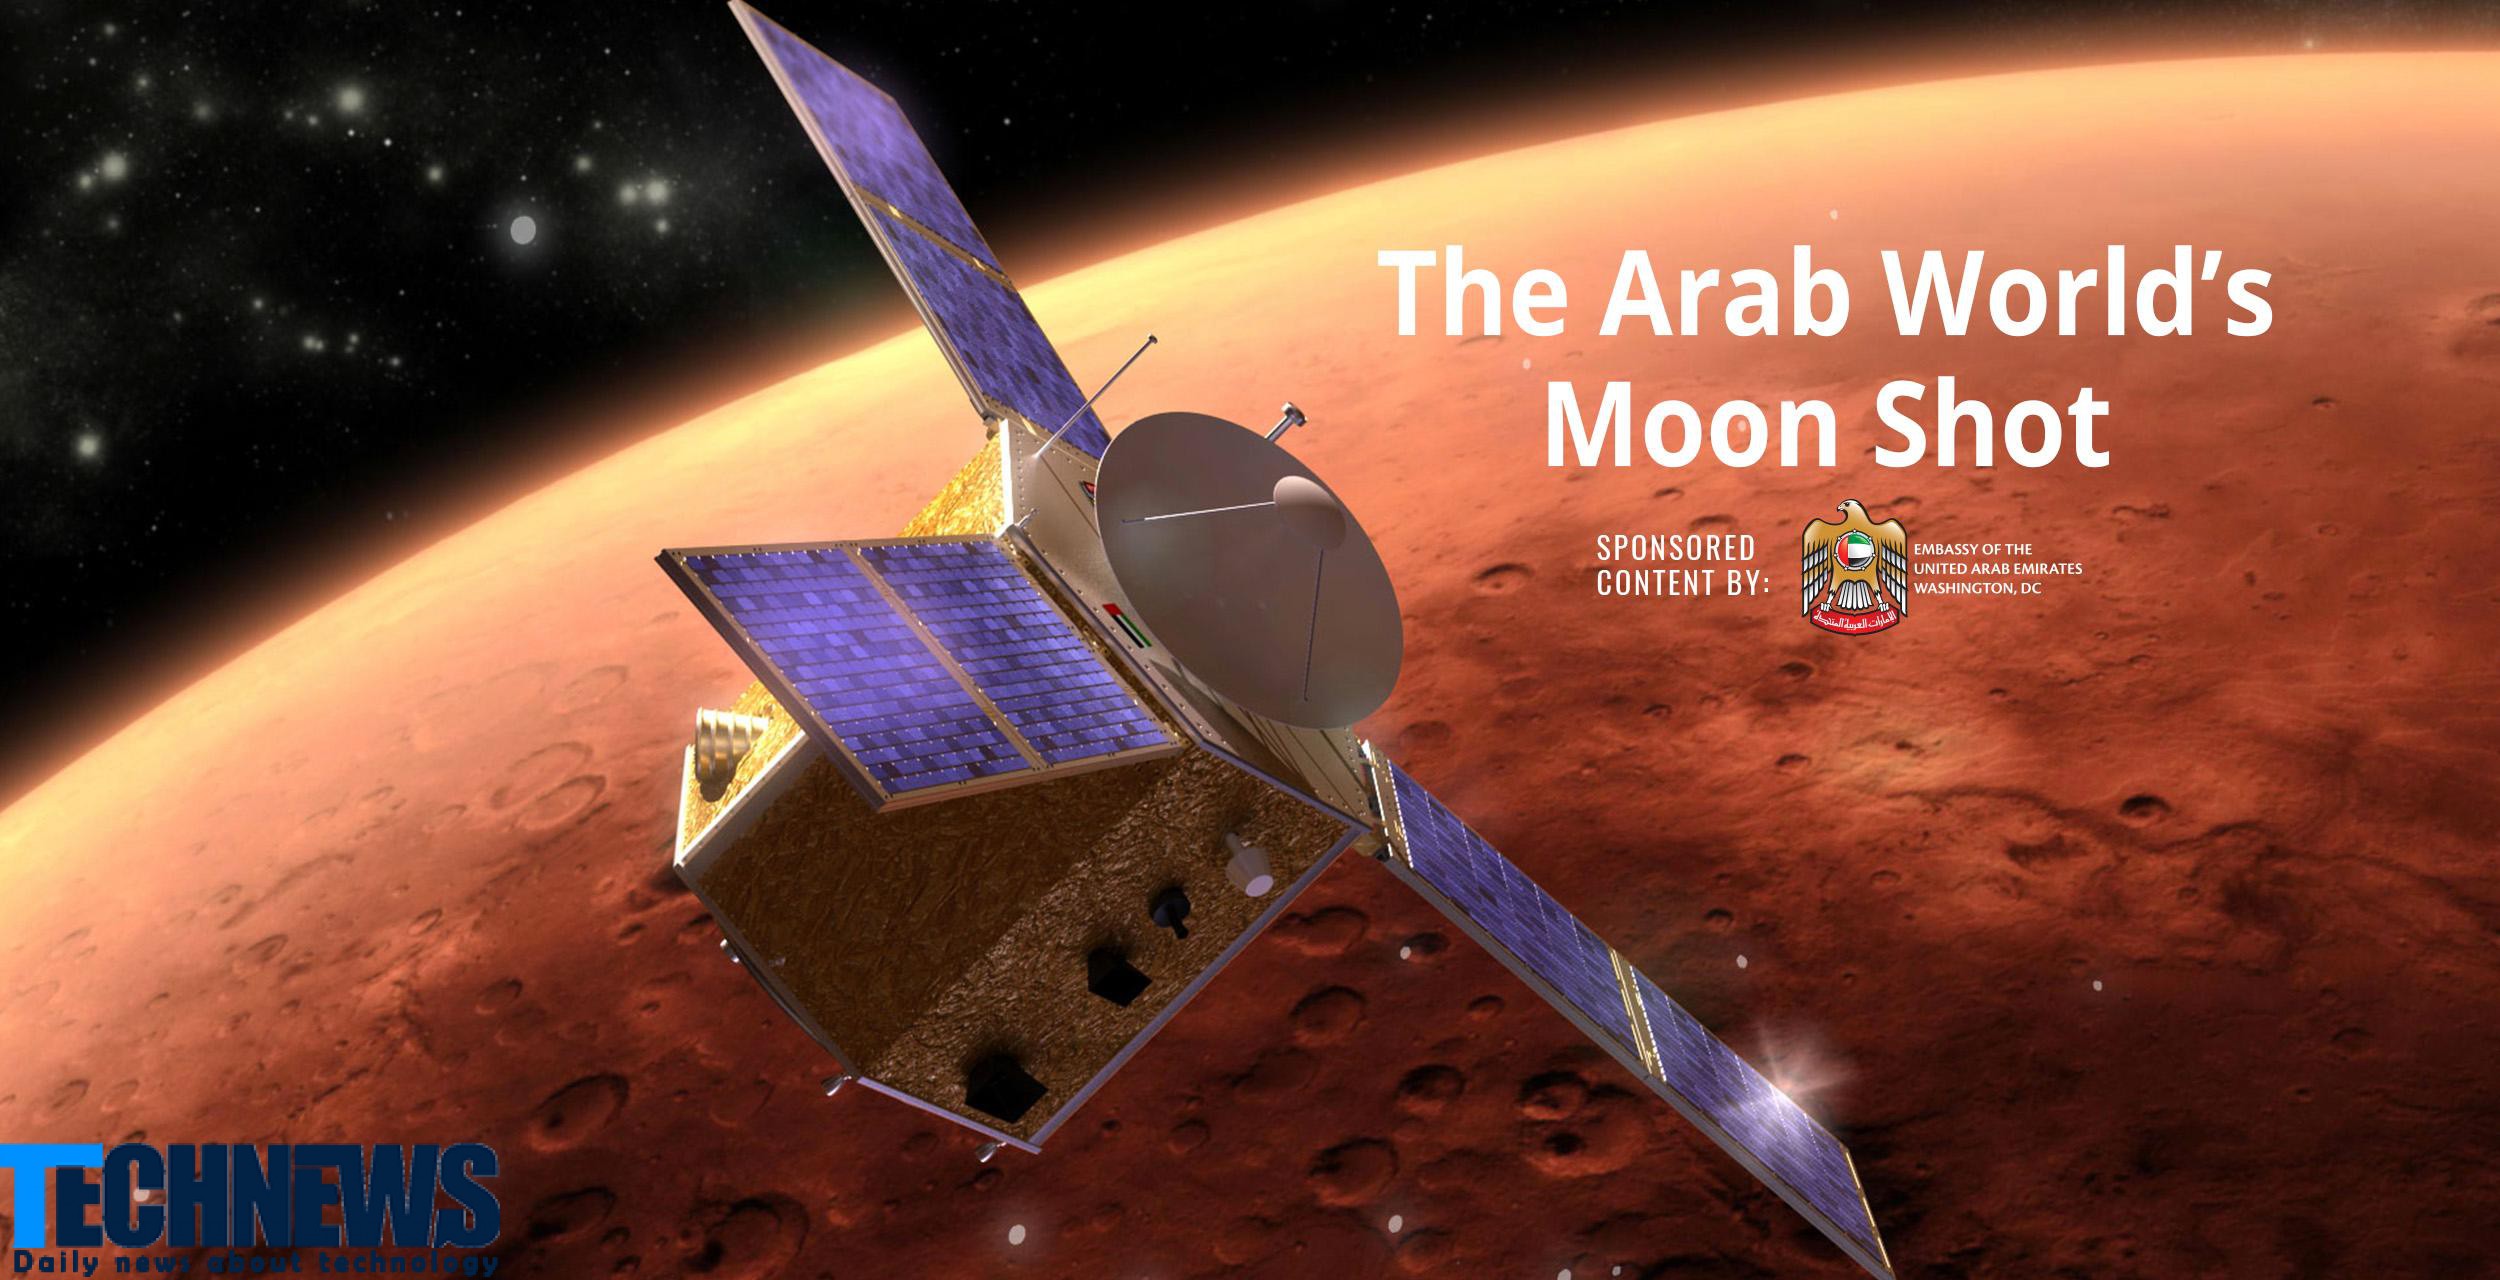 امارات متحده عربی اولین کشور عربی آغاز کننده سفر مریخ خواهد بود